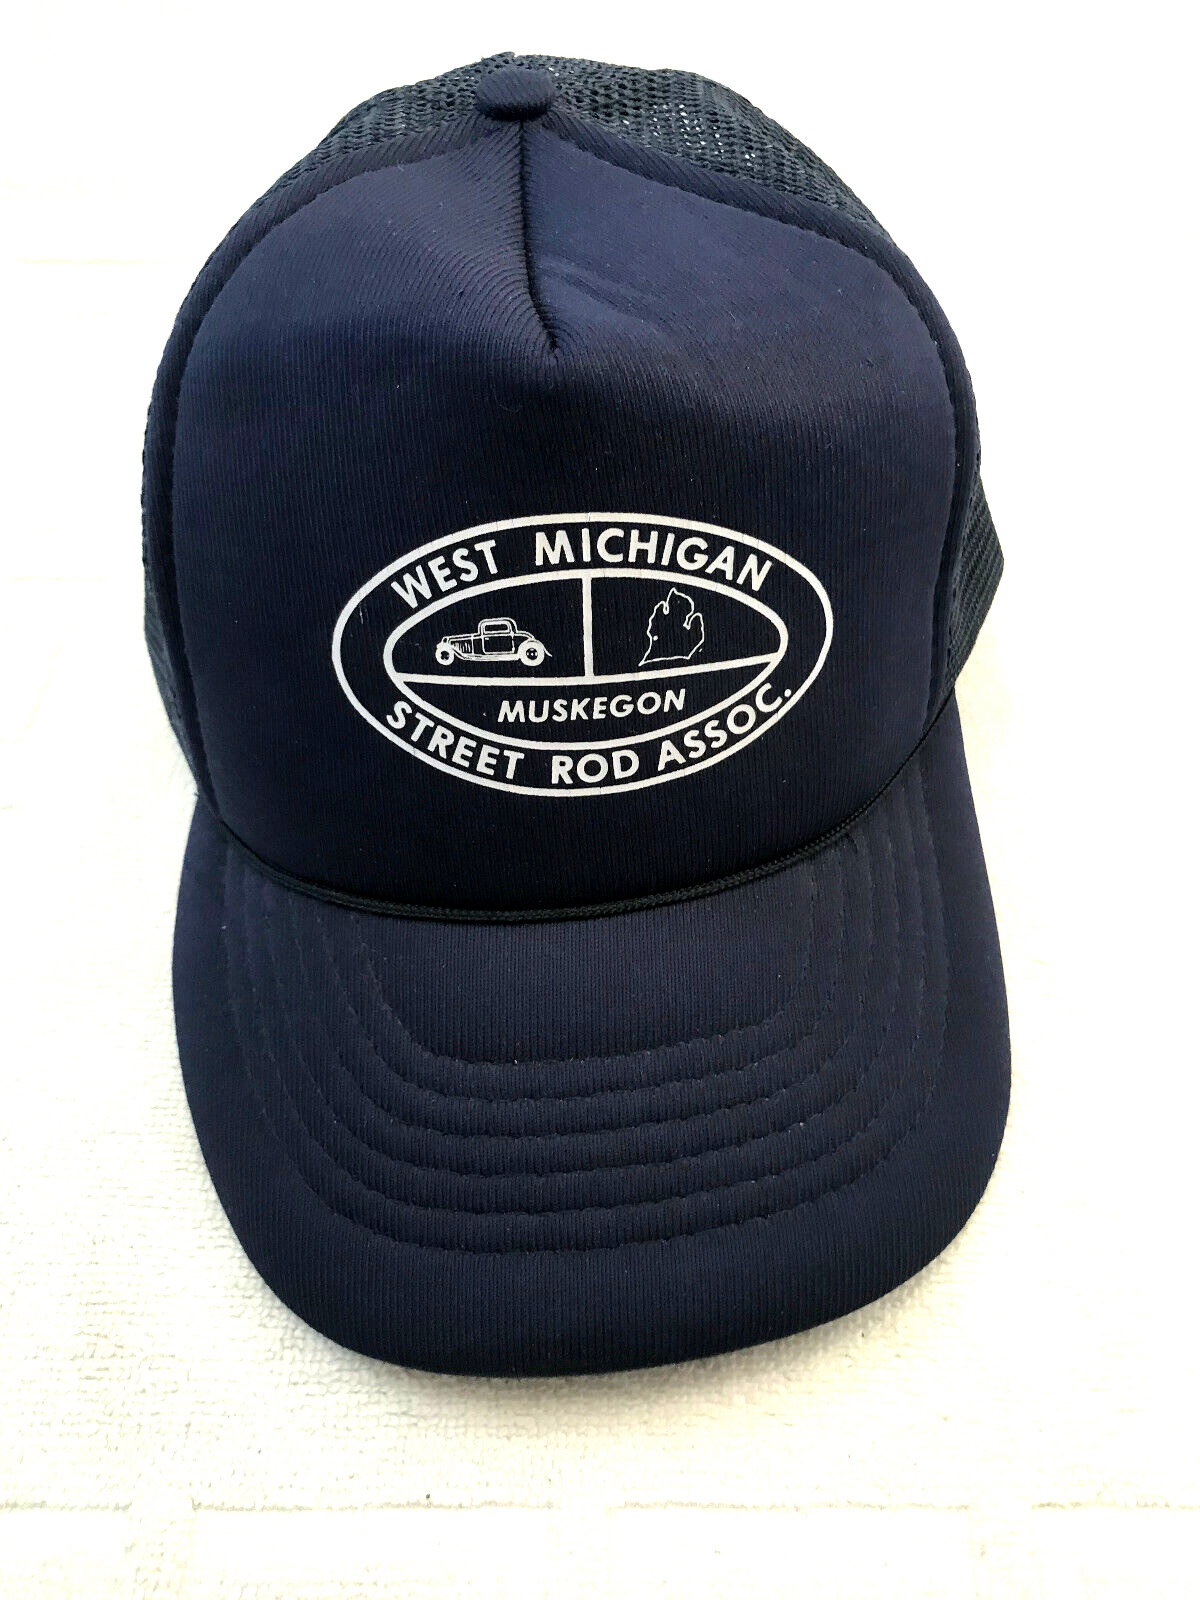 VTG West Michigan Street Rod Association Muskegon Strapback Trucker Cap Hat Navy